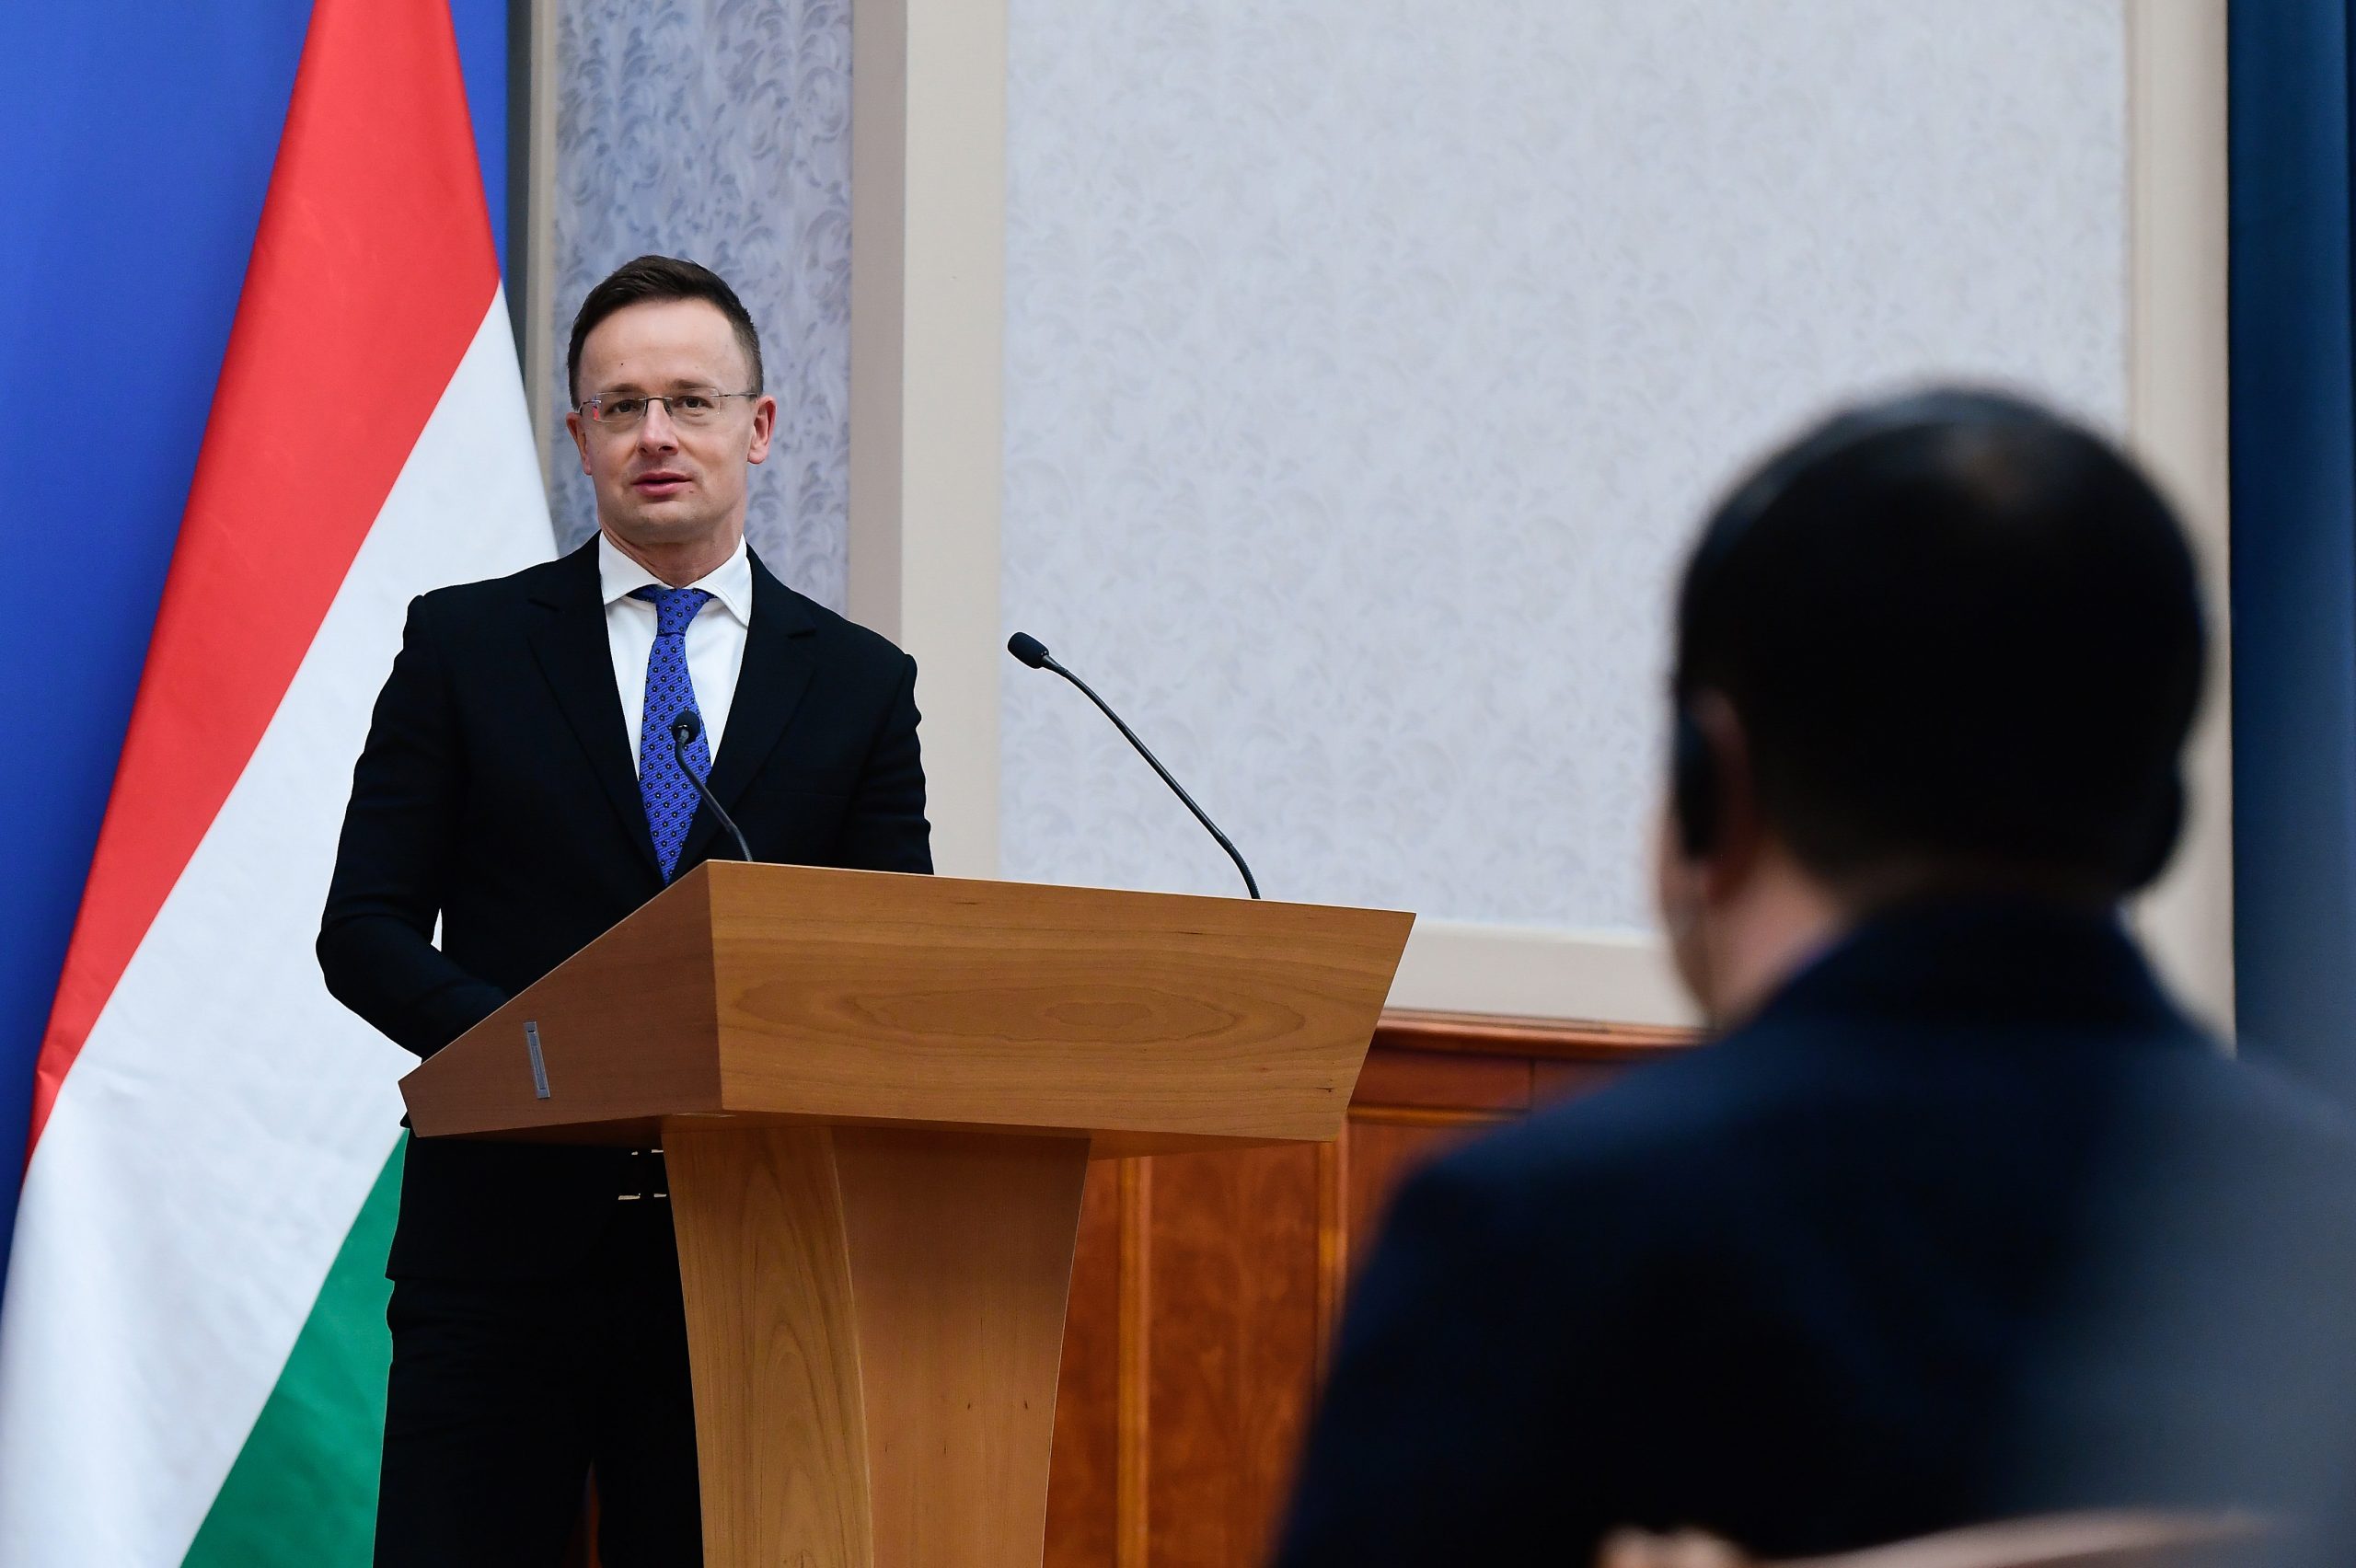 FM Szijjártó: Cooperation Between South Korea and Hungary 'Success Story'